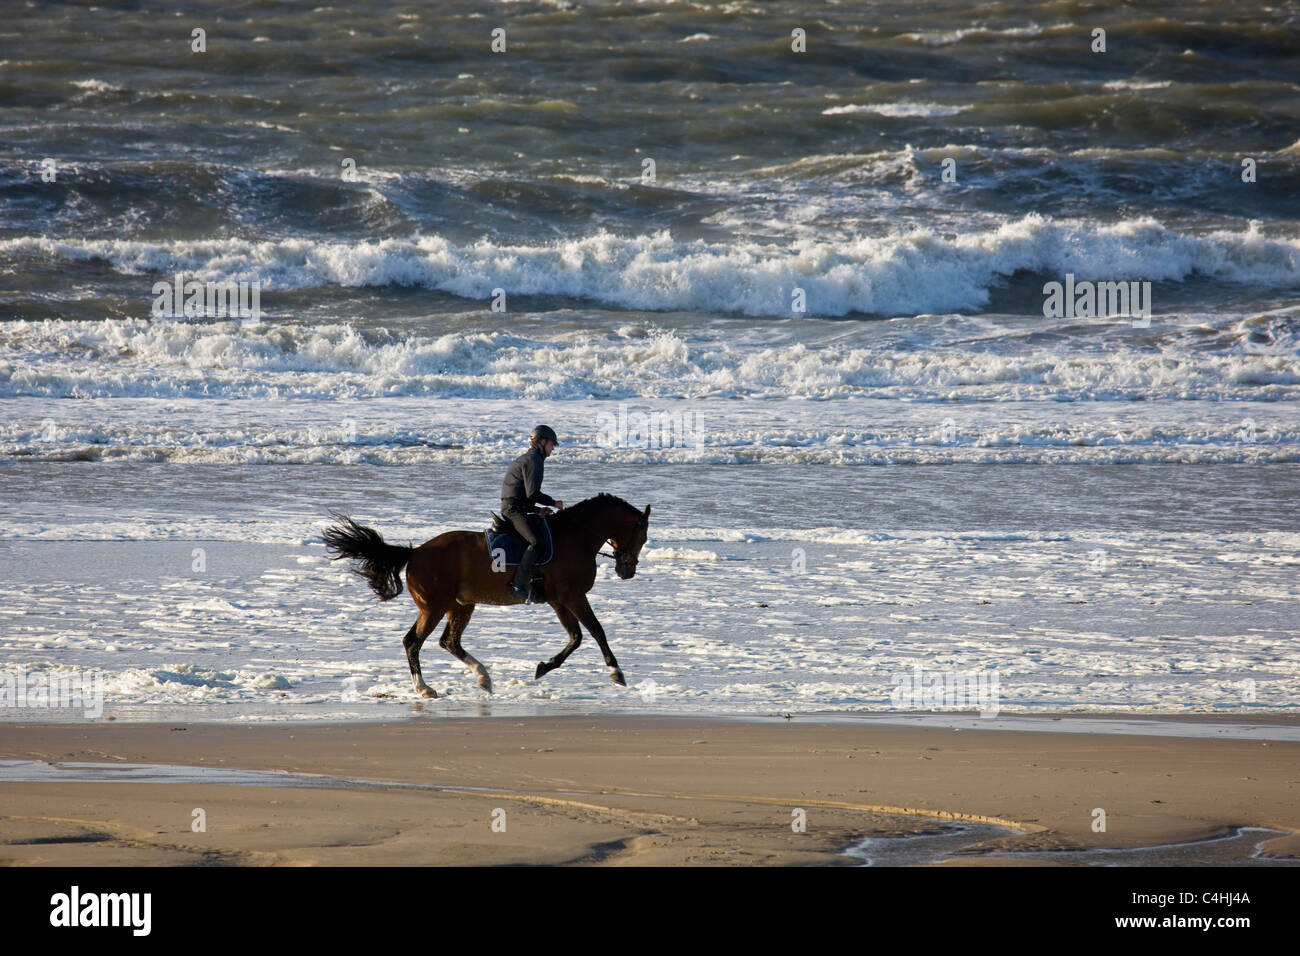 Jinete en caballo (Equus caballus), sobre la playa en la costa del Mar del Norte, Bélgica Foto de stock